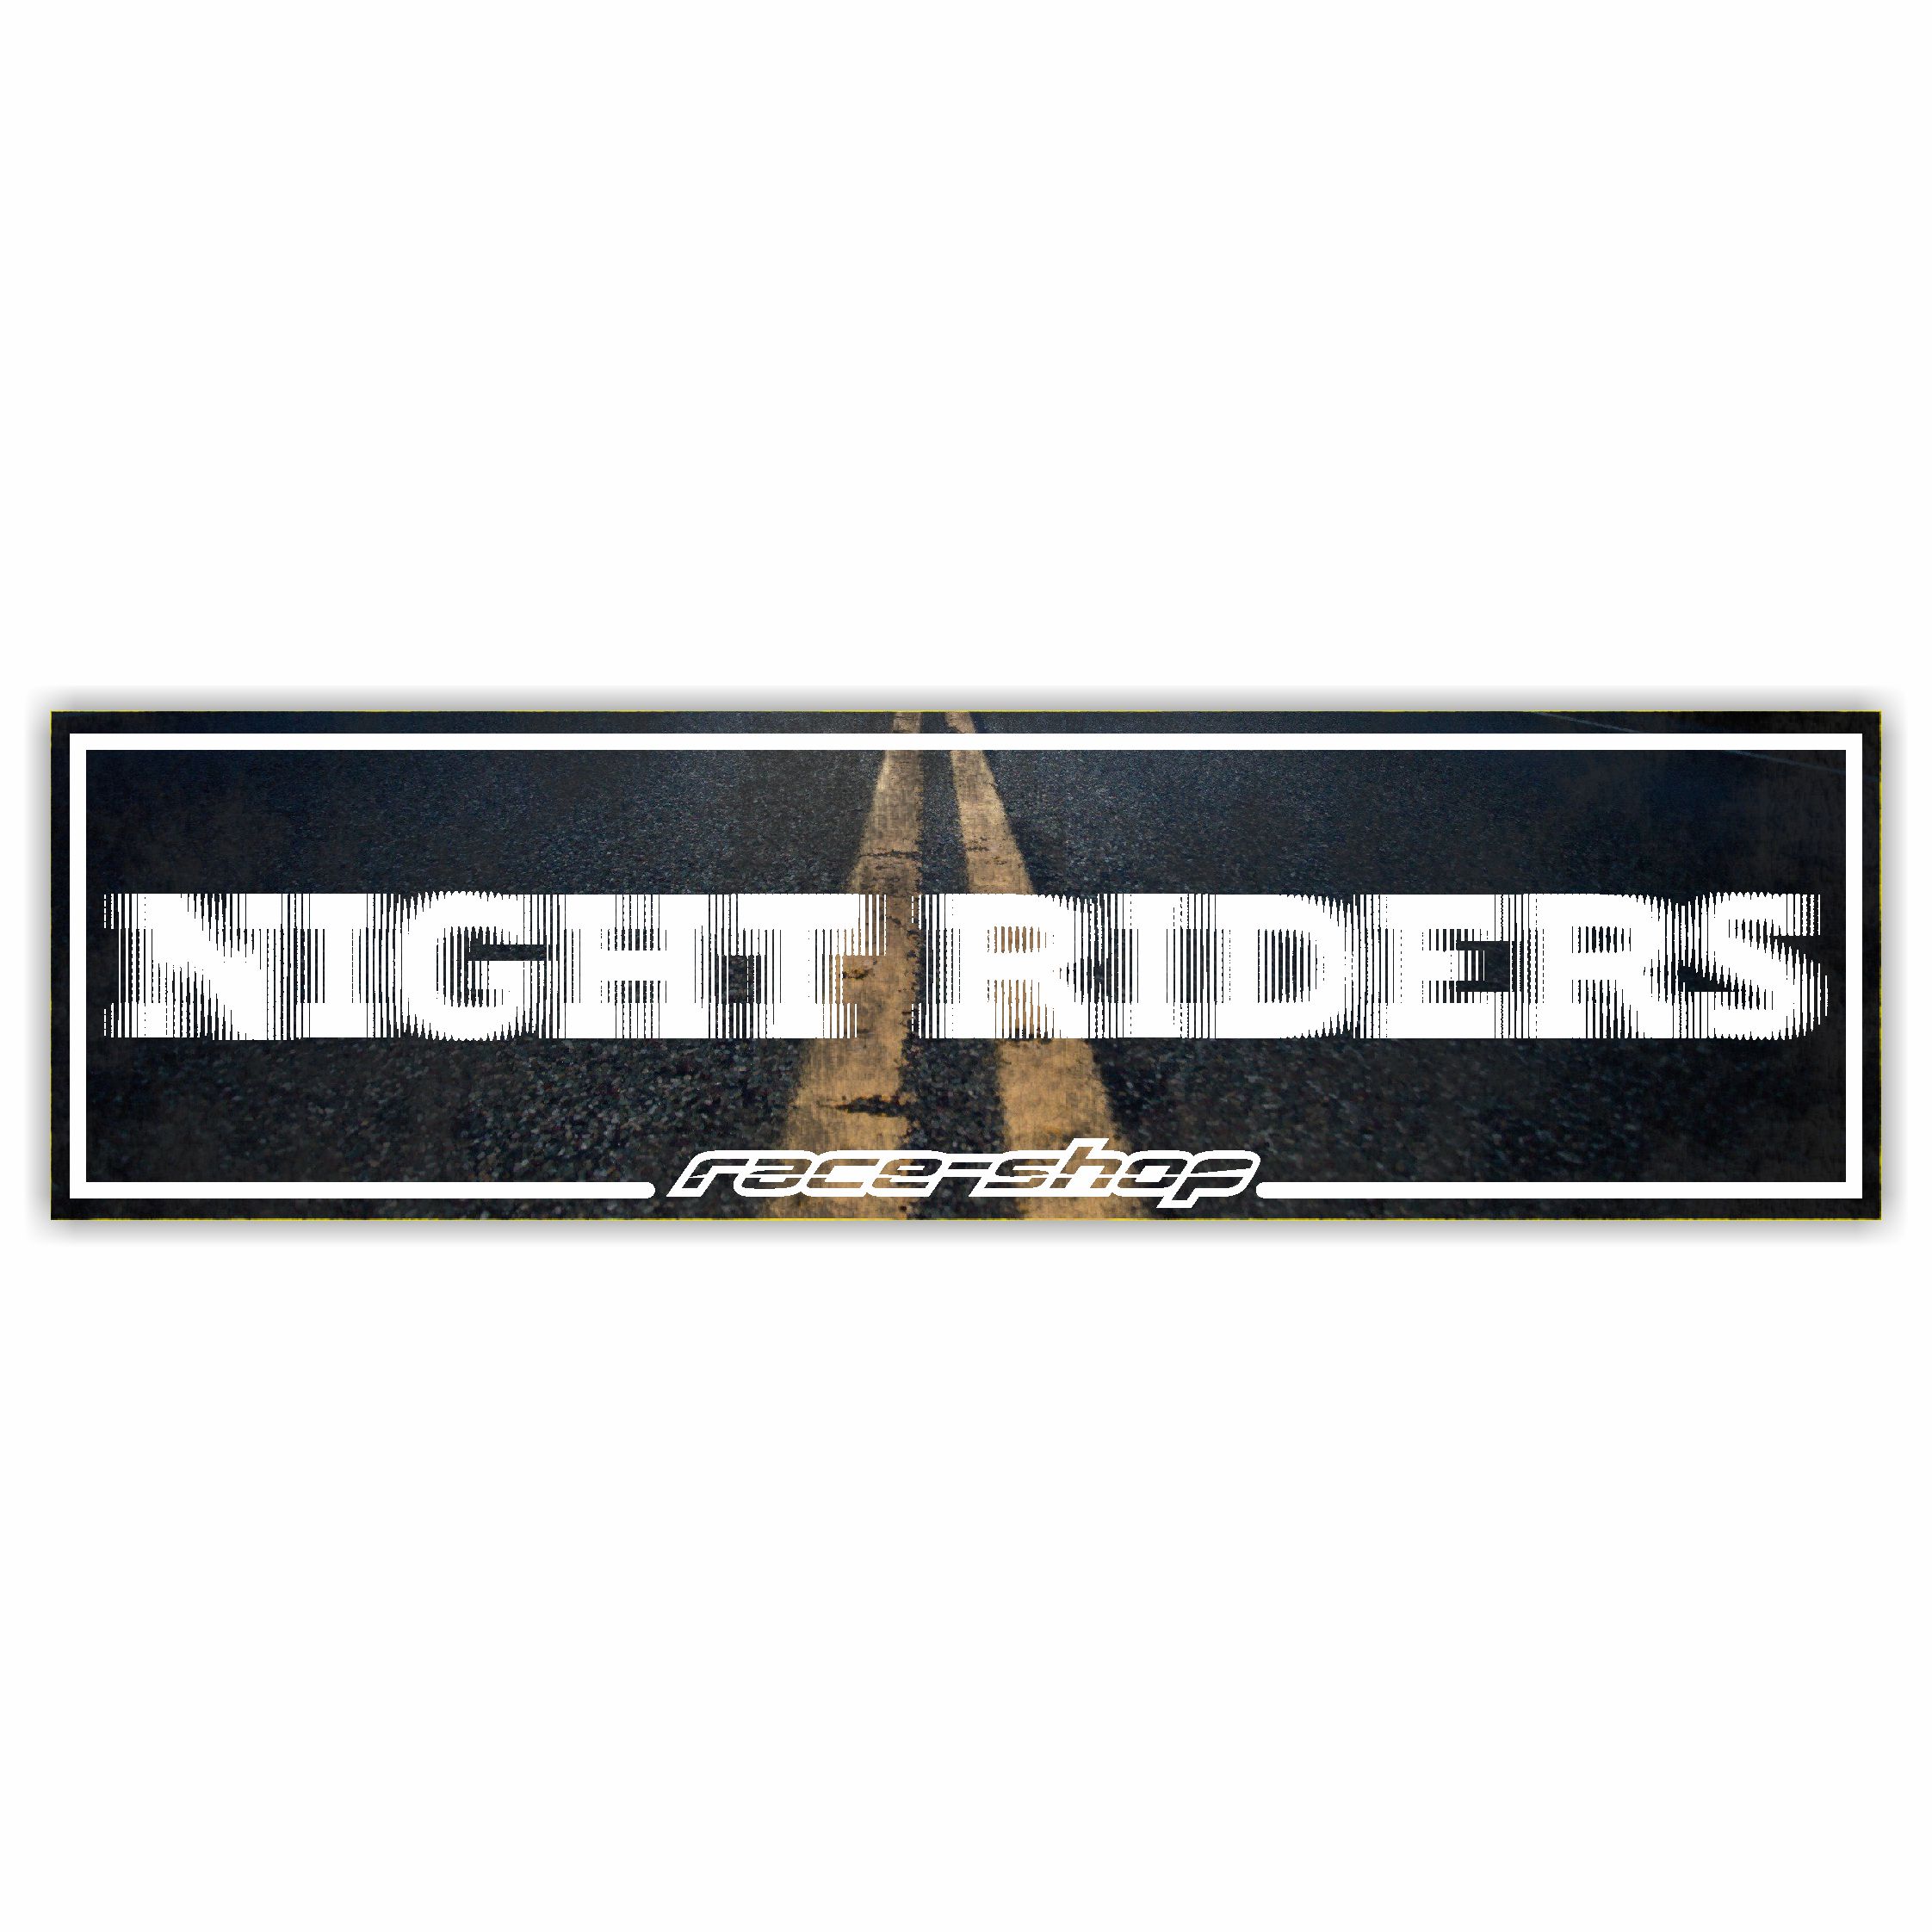 Knight Rider - Technik-Shop